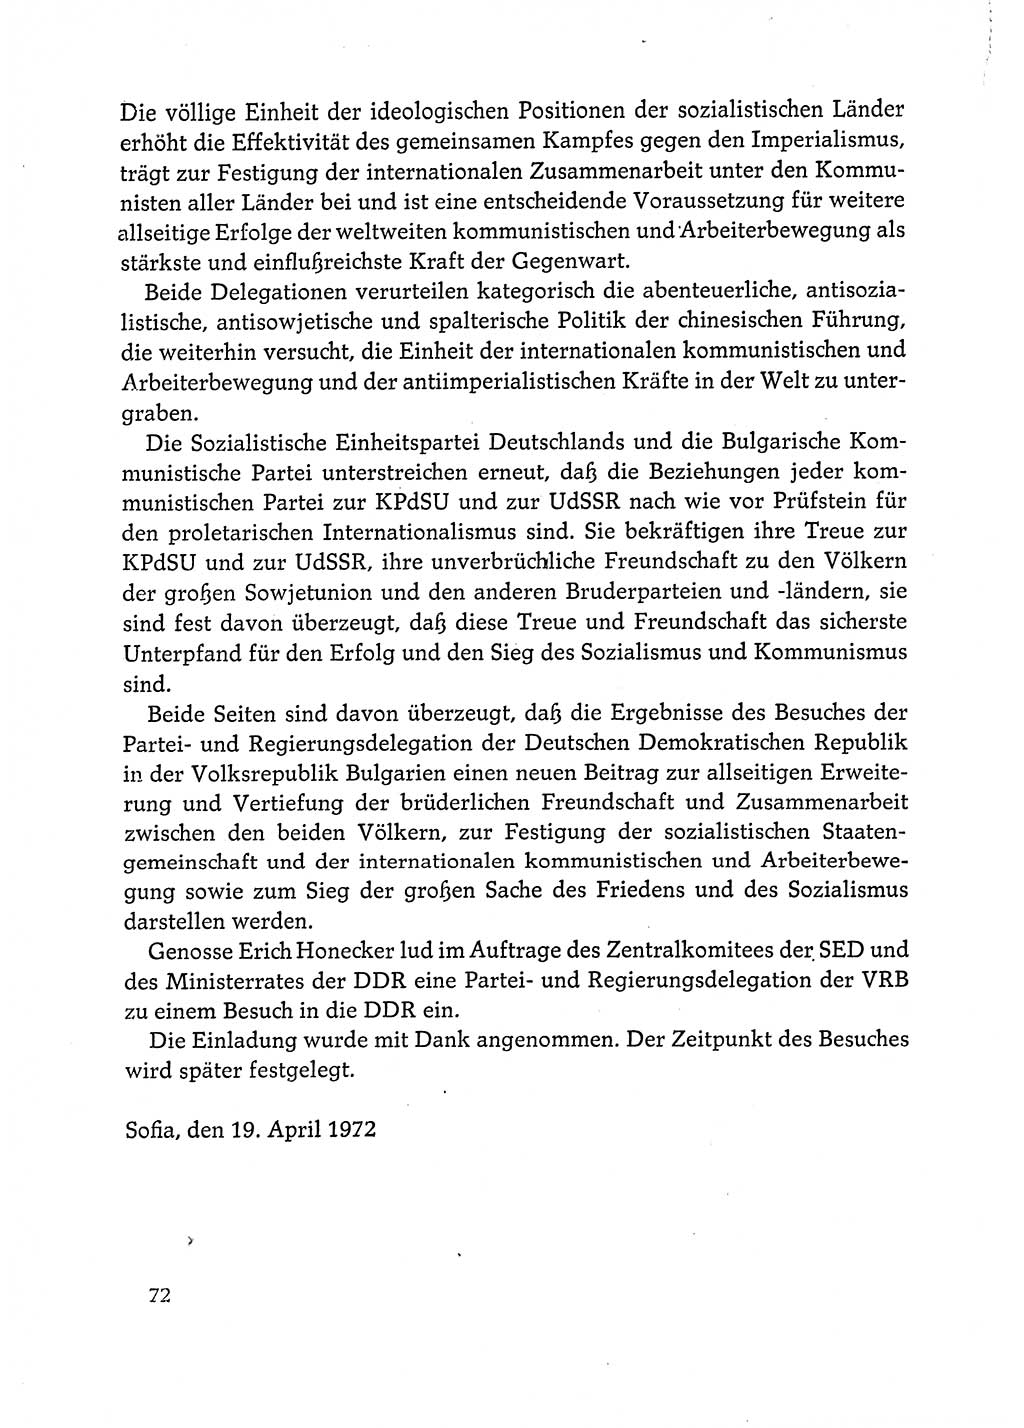 Dokumente der Sozialistischen Einheitspartei Deutschlands (SED) [Deutsche Demokratische Republik (DDR)] 1972-1973, Seite 72 (Dok. SED DDR 1972-1973, S. 72)